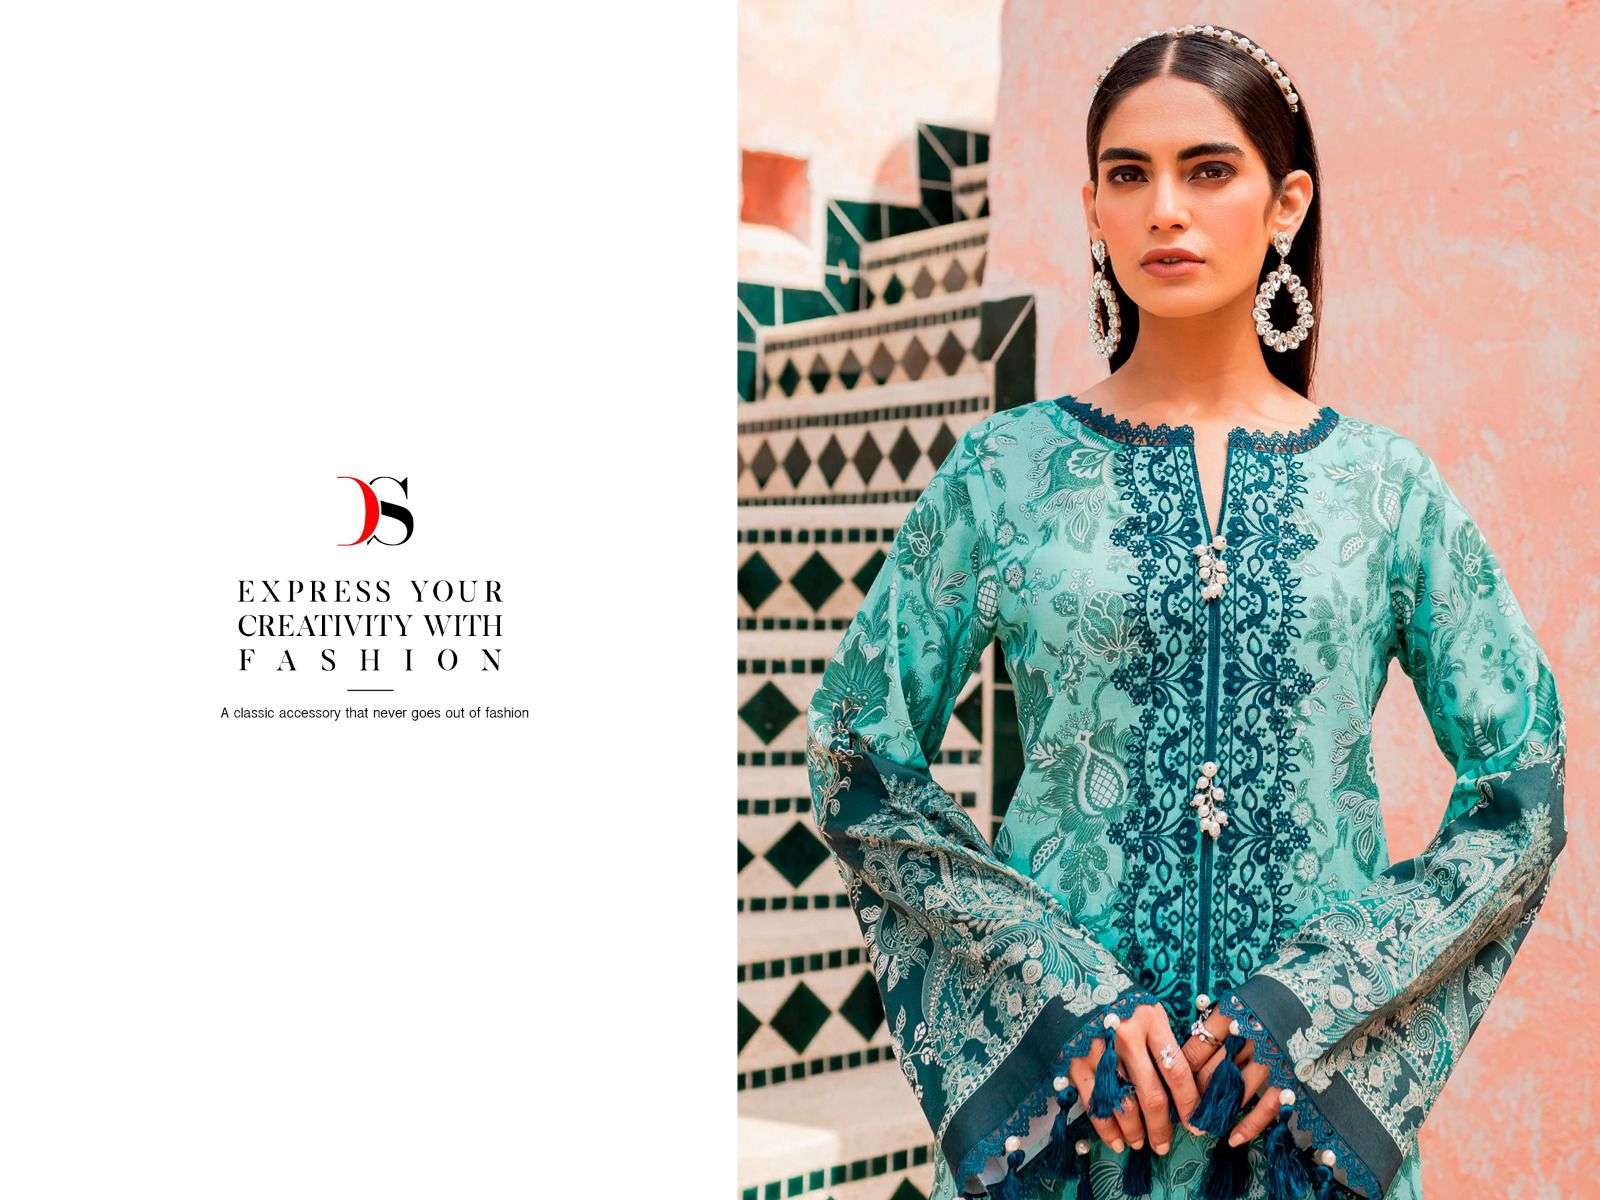 deepsy suits firdous flora 3071-3078 series pure cotton designer pakistani suits catalogue design 2023